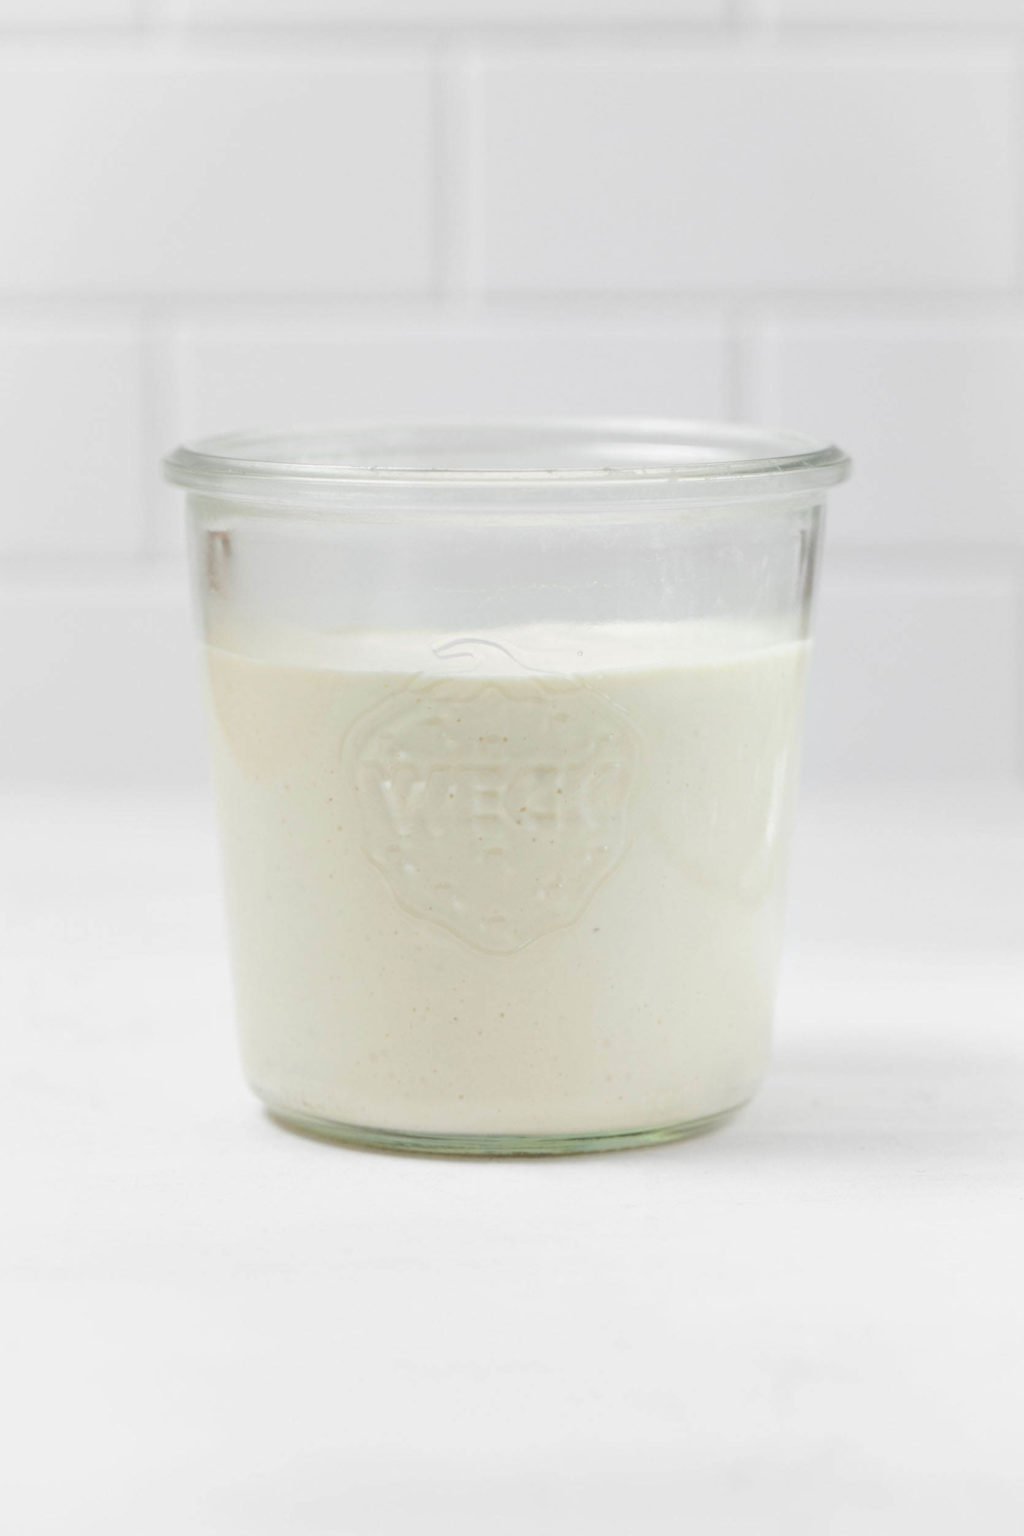 Un frasco de vidrio contiene crema agria vegana de color blanco cremoso.  Se encuentra sobre una superficie blanca.